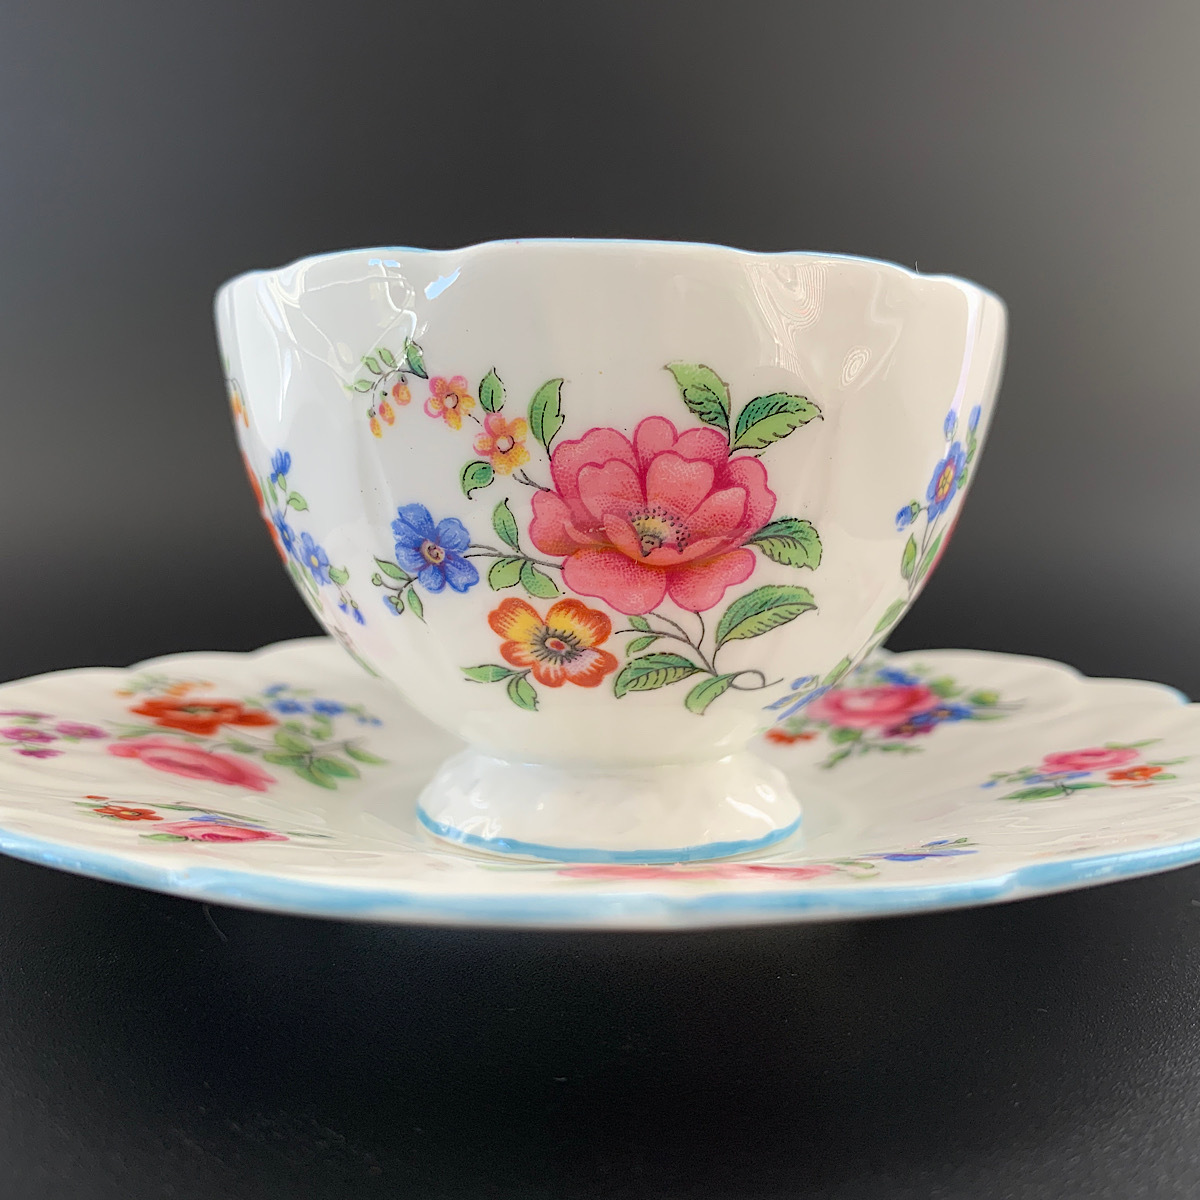 [ очень редкий!!] Aynsley 1930 годы производства 80 год после . бабочка руль цветок рисунок чайная чашка & блюдце прекрасный товар!!